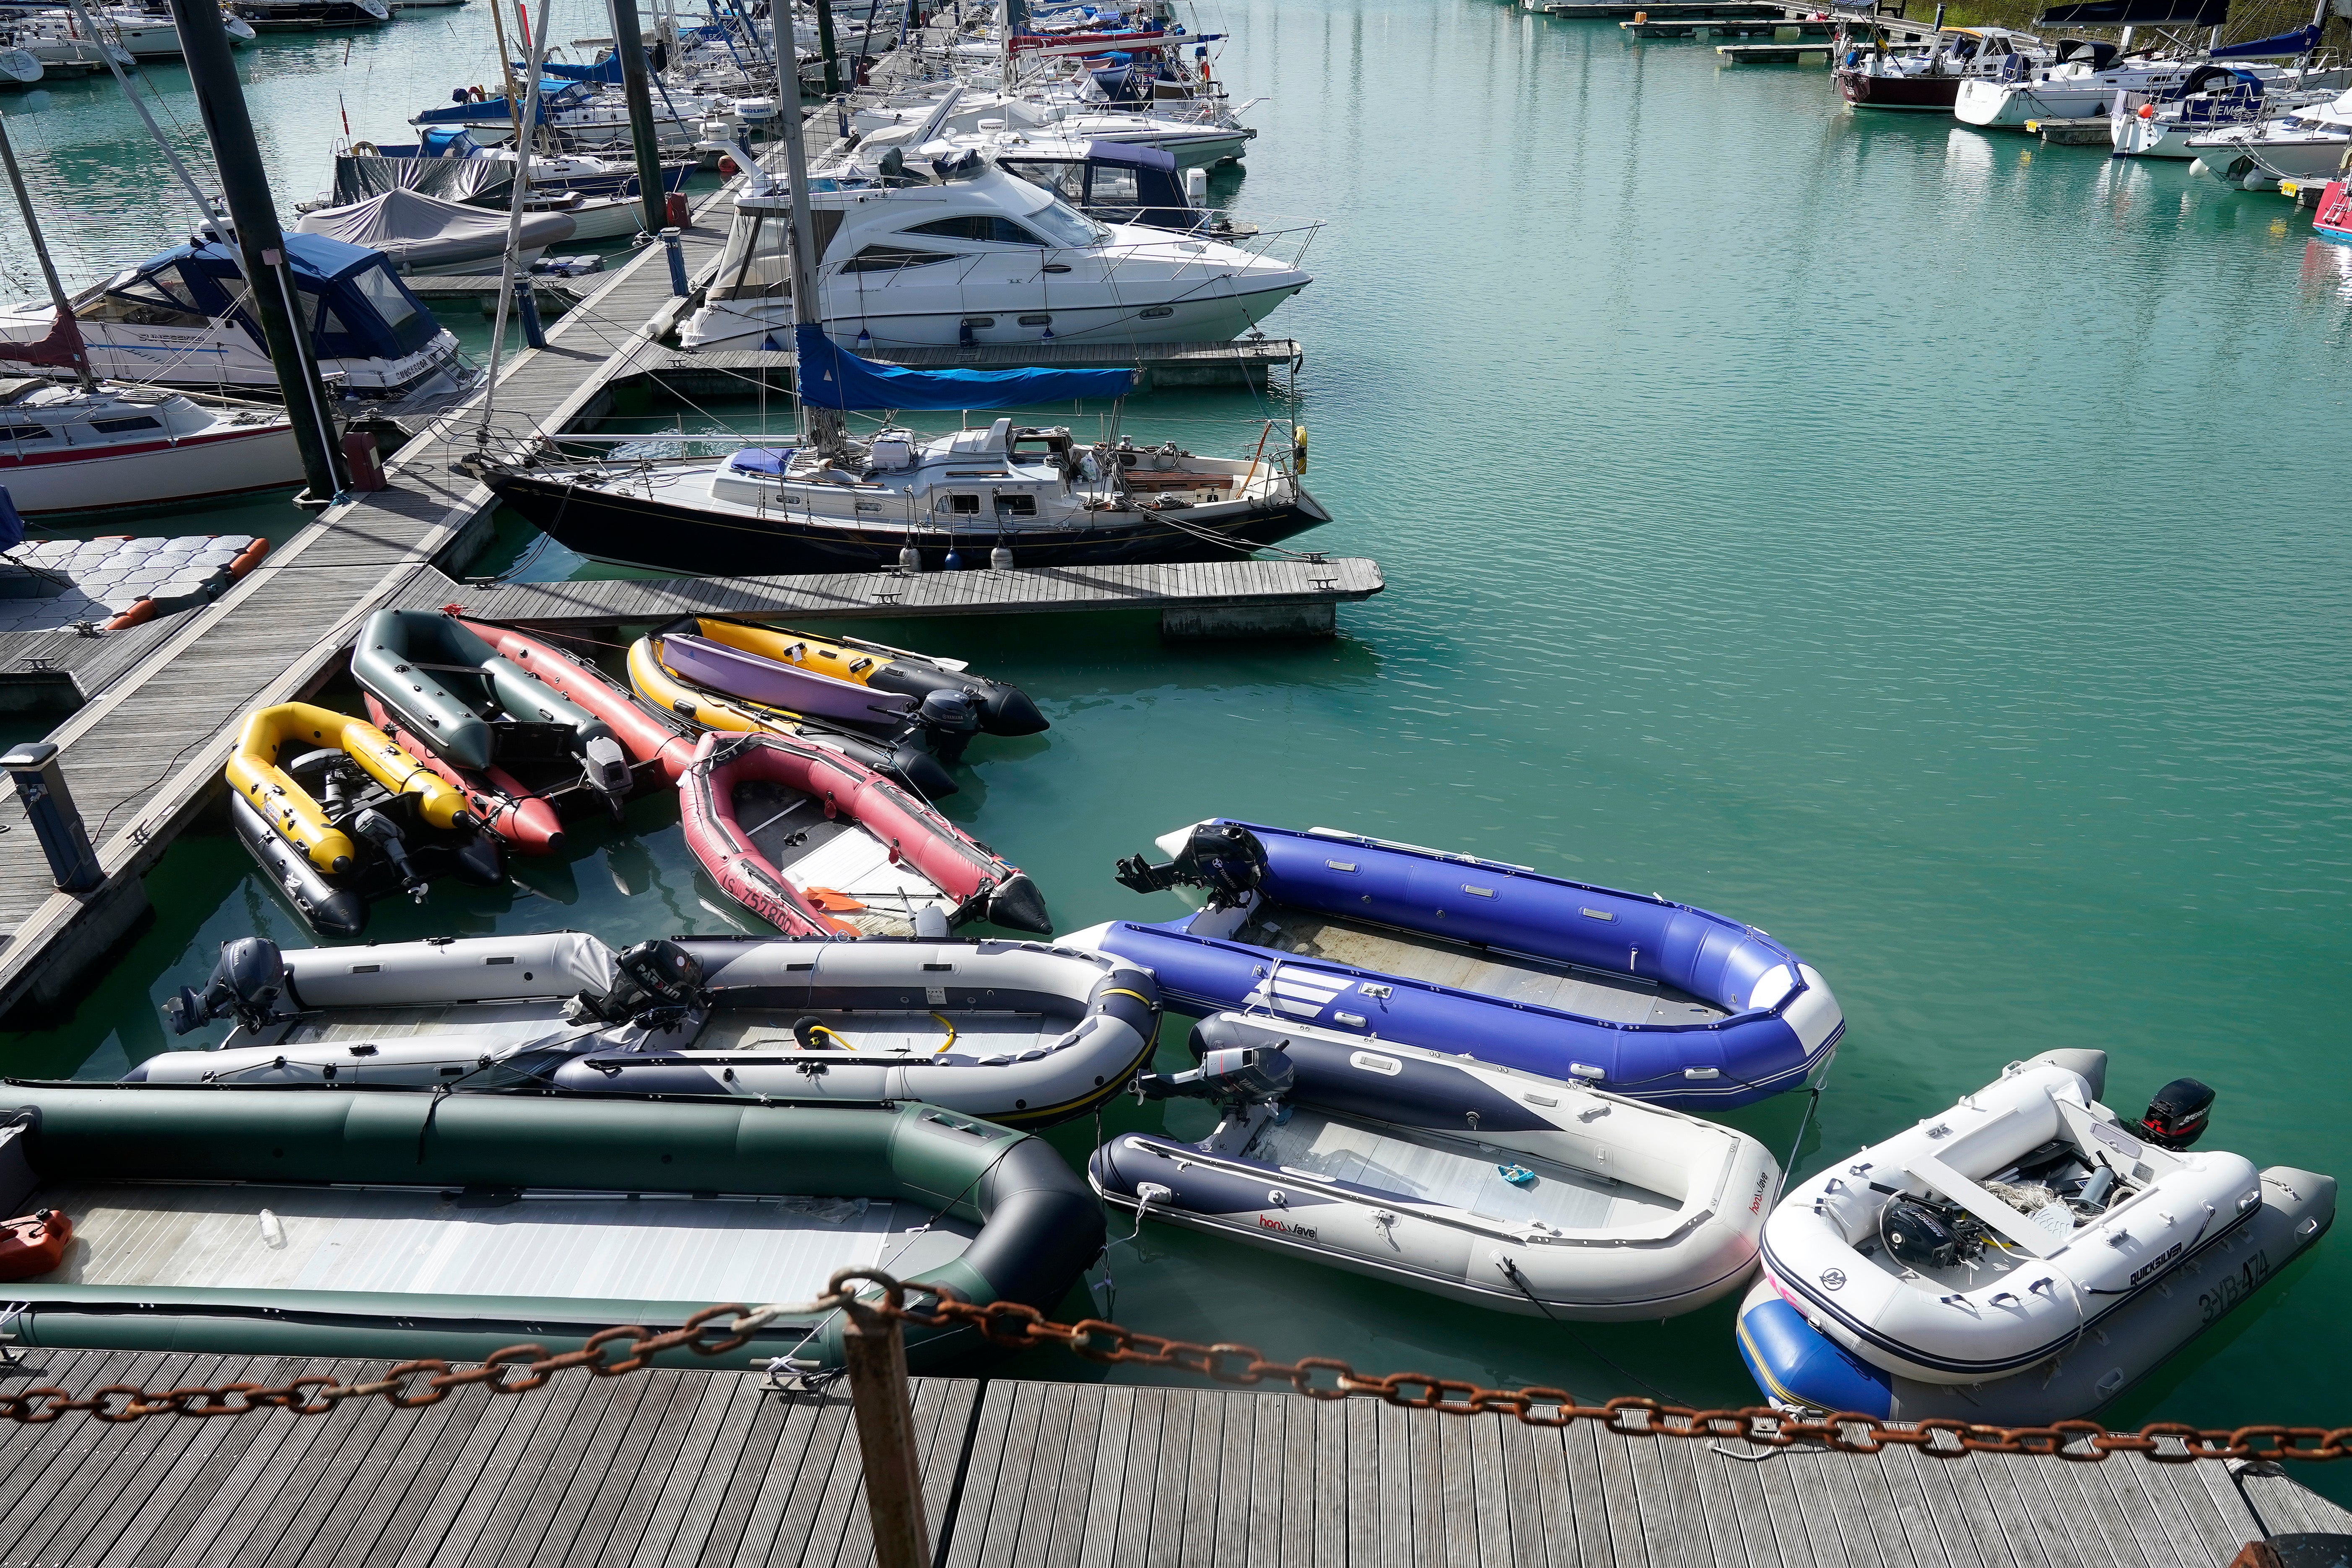 Los botes inflables, que se cree que fueron utilizados por los migrantes para cruzar el Canal, se almacenan en Dover Marina.